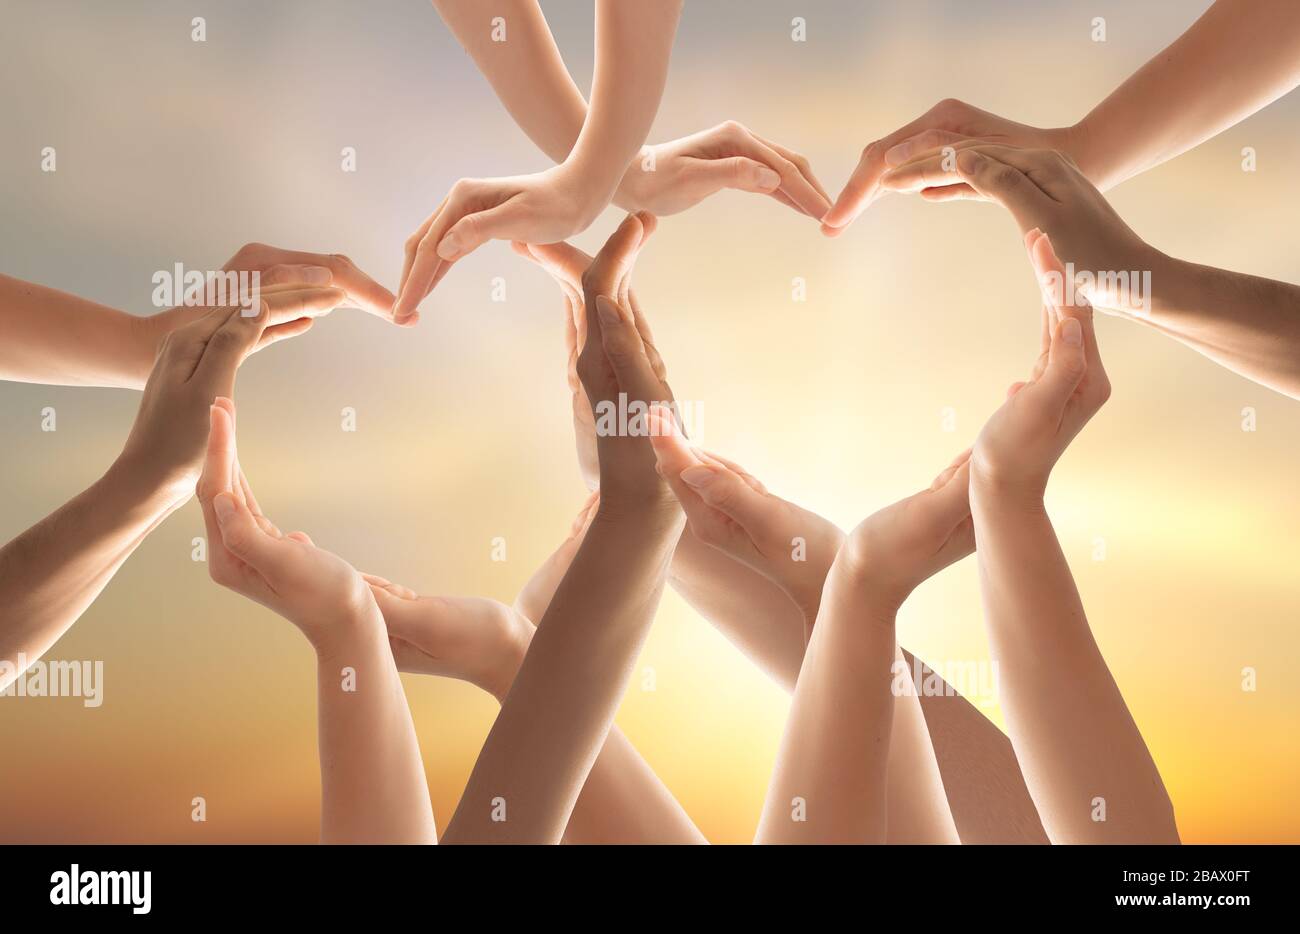 Símbolo y forma del corazón creado a partir de Hands.El concepto de unidad, cooperación, asociación, trabajo en equipo y caridad. Foto de stock